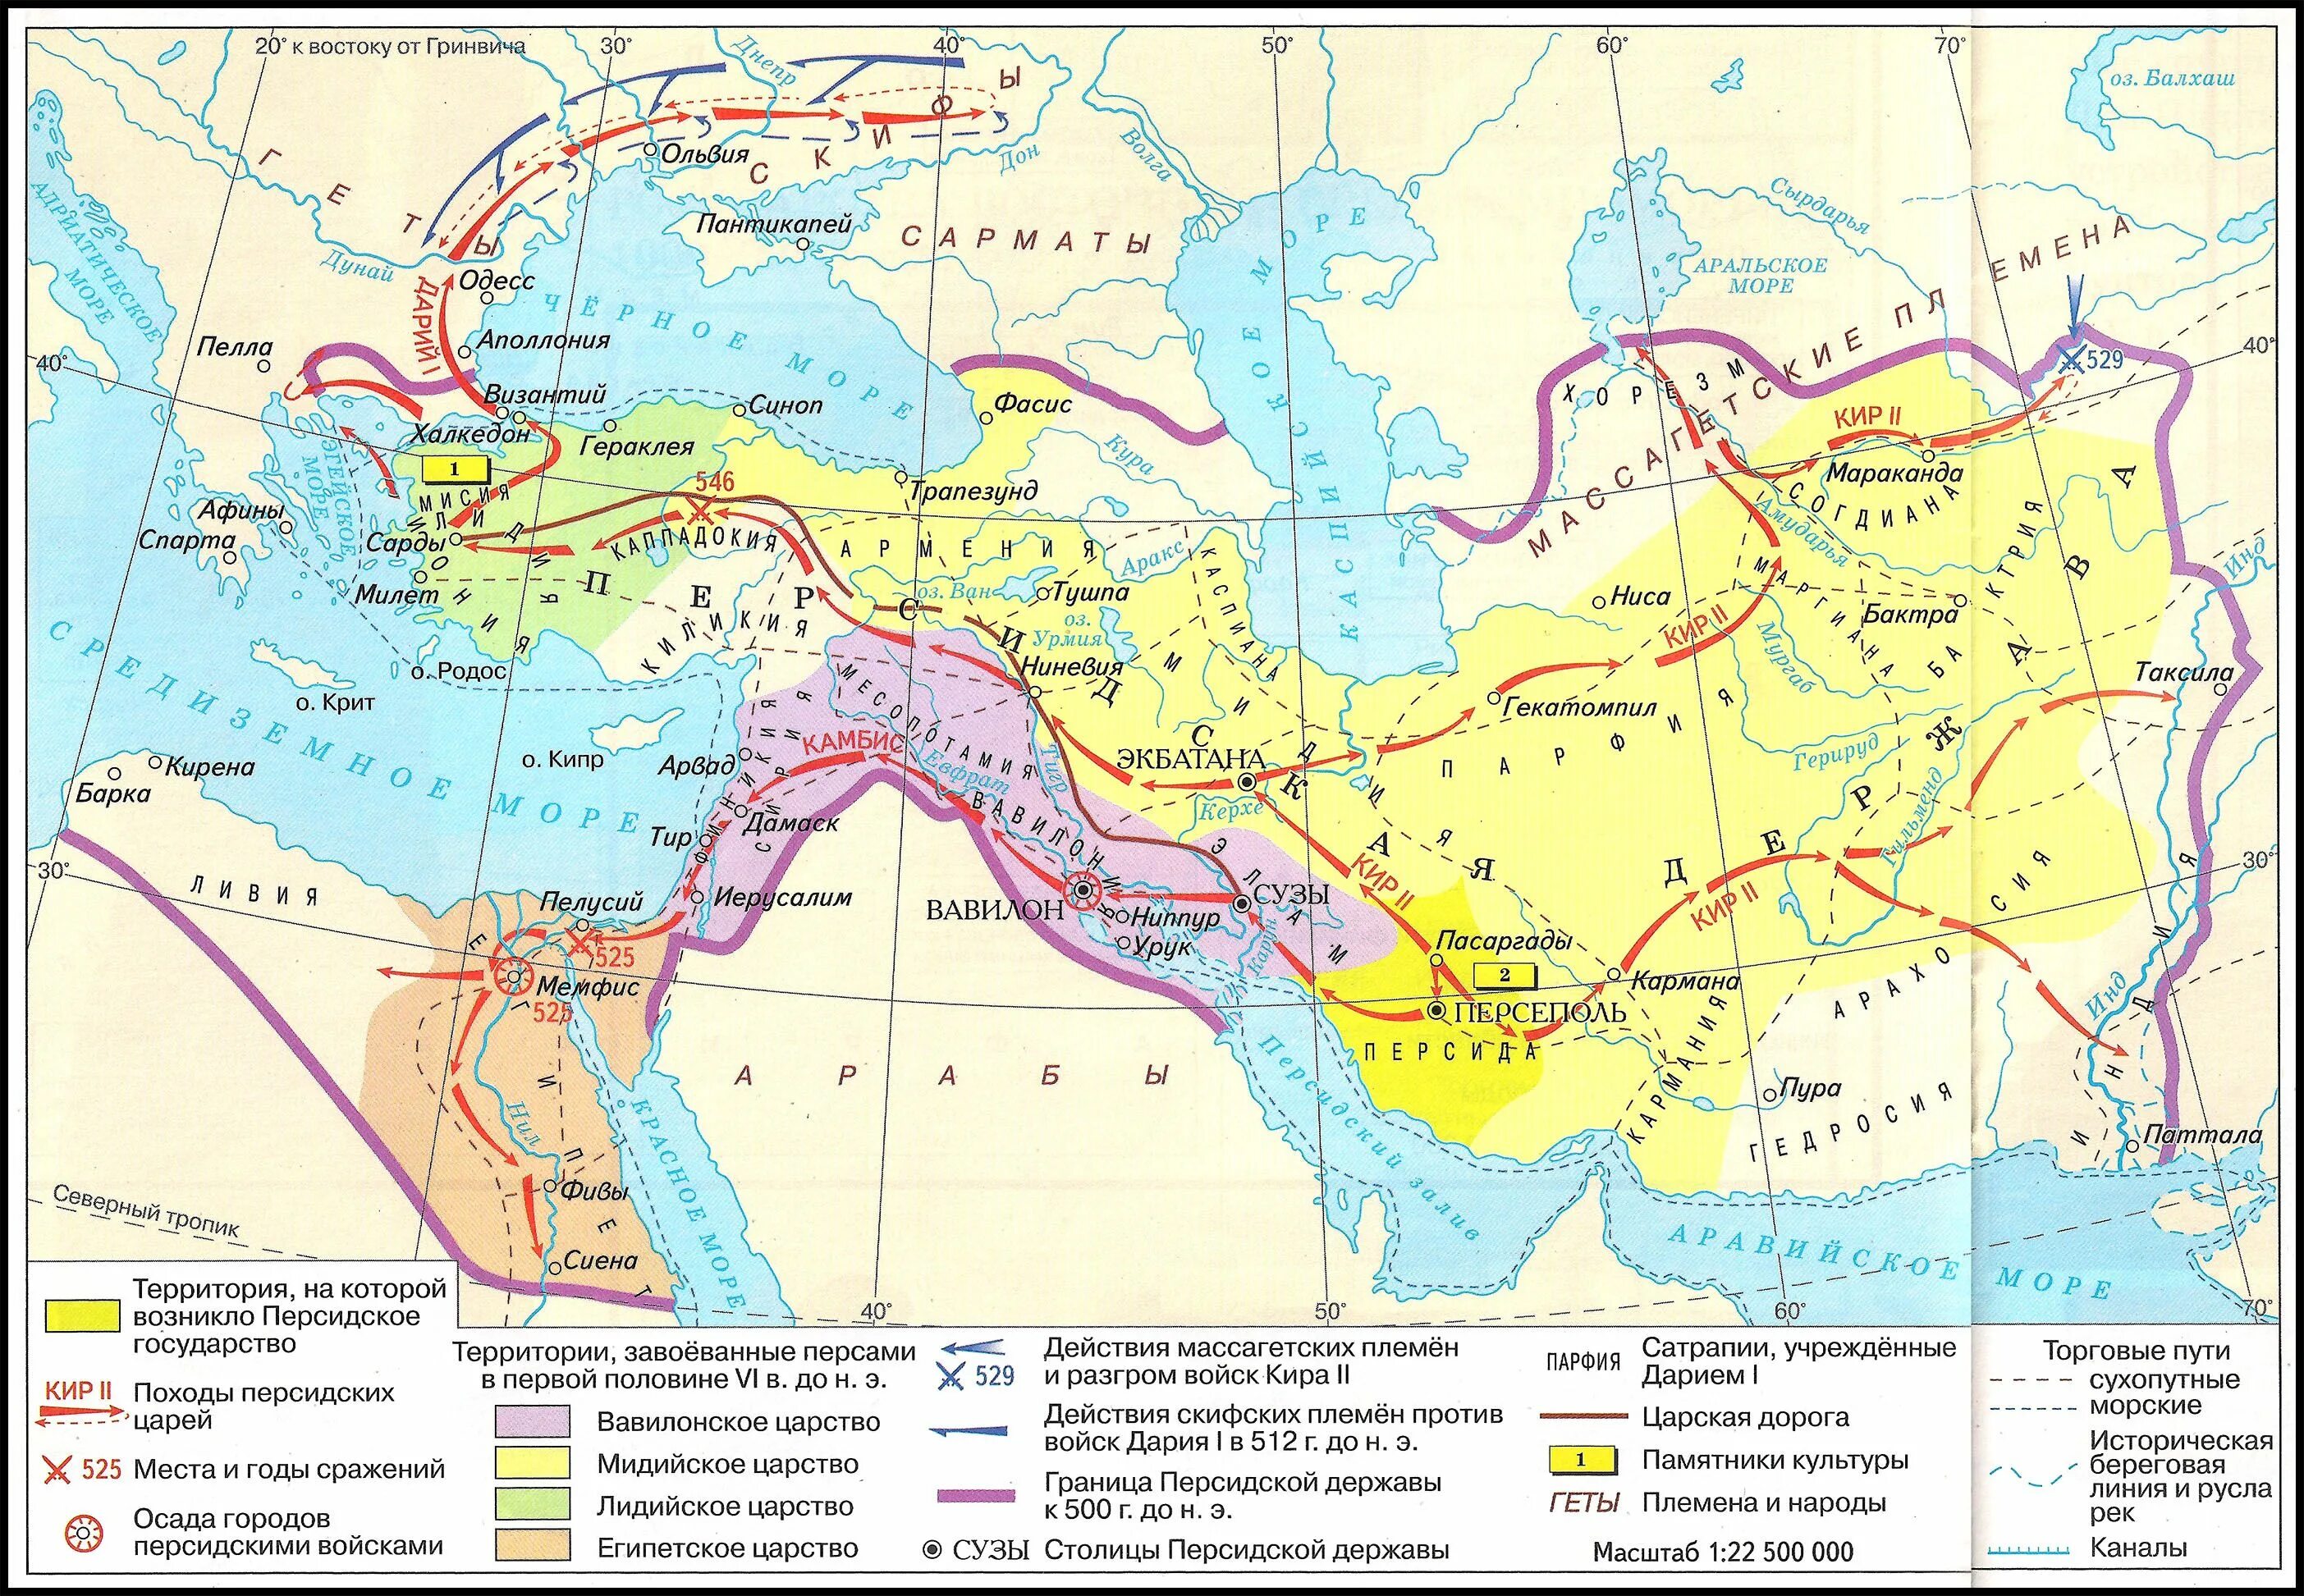 Персидская держава 5 класс на карте впр. Персидская держава 550-330 гг до н э.